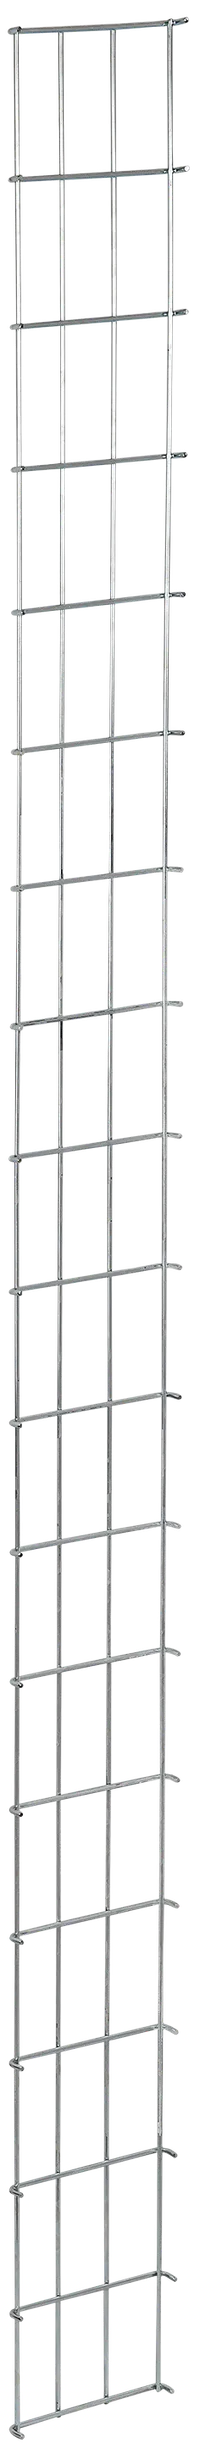 ITK by ZPAS Органайзер кабельный вертикальный проволочный 40-42U